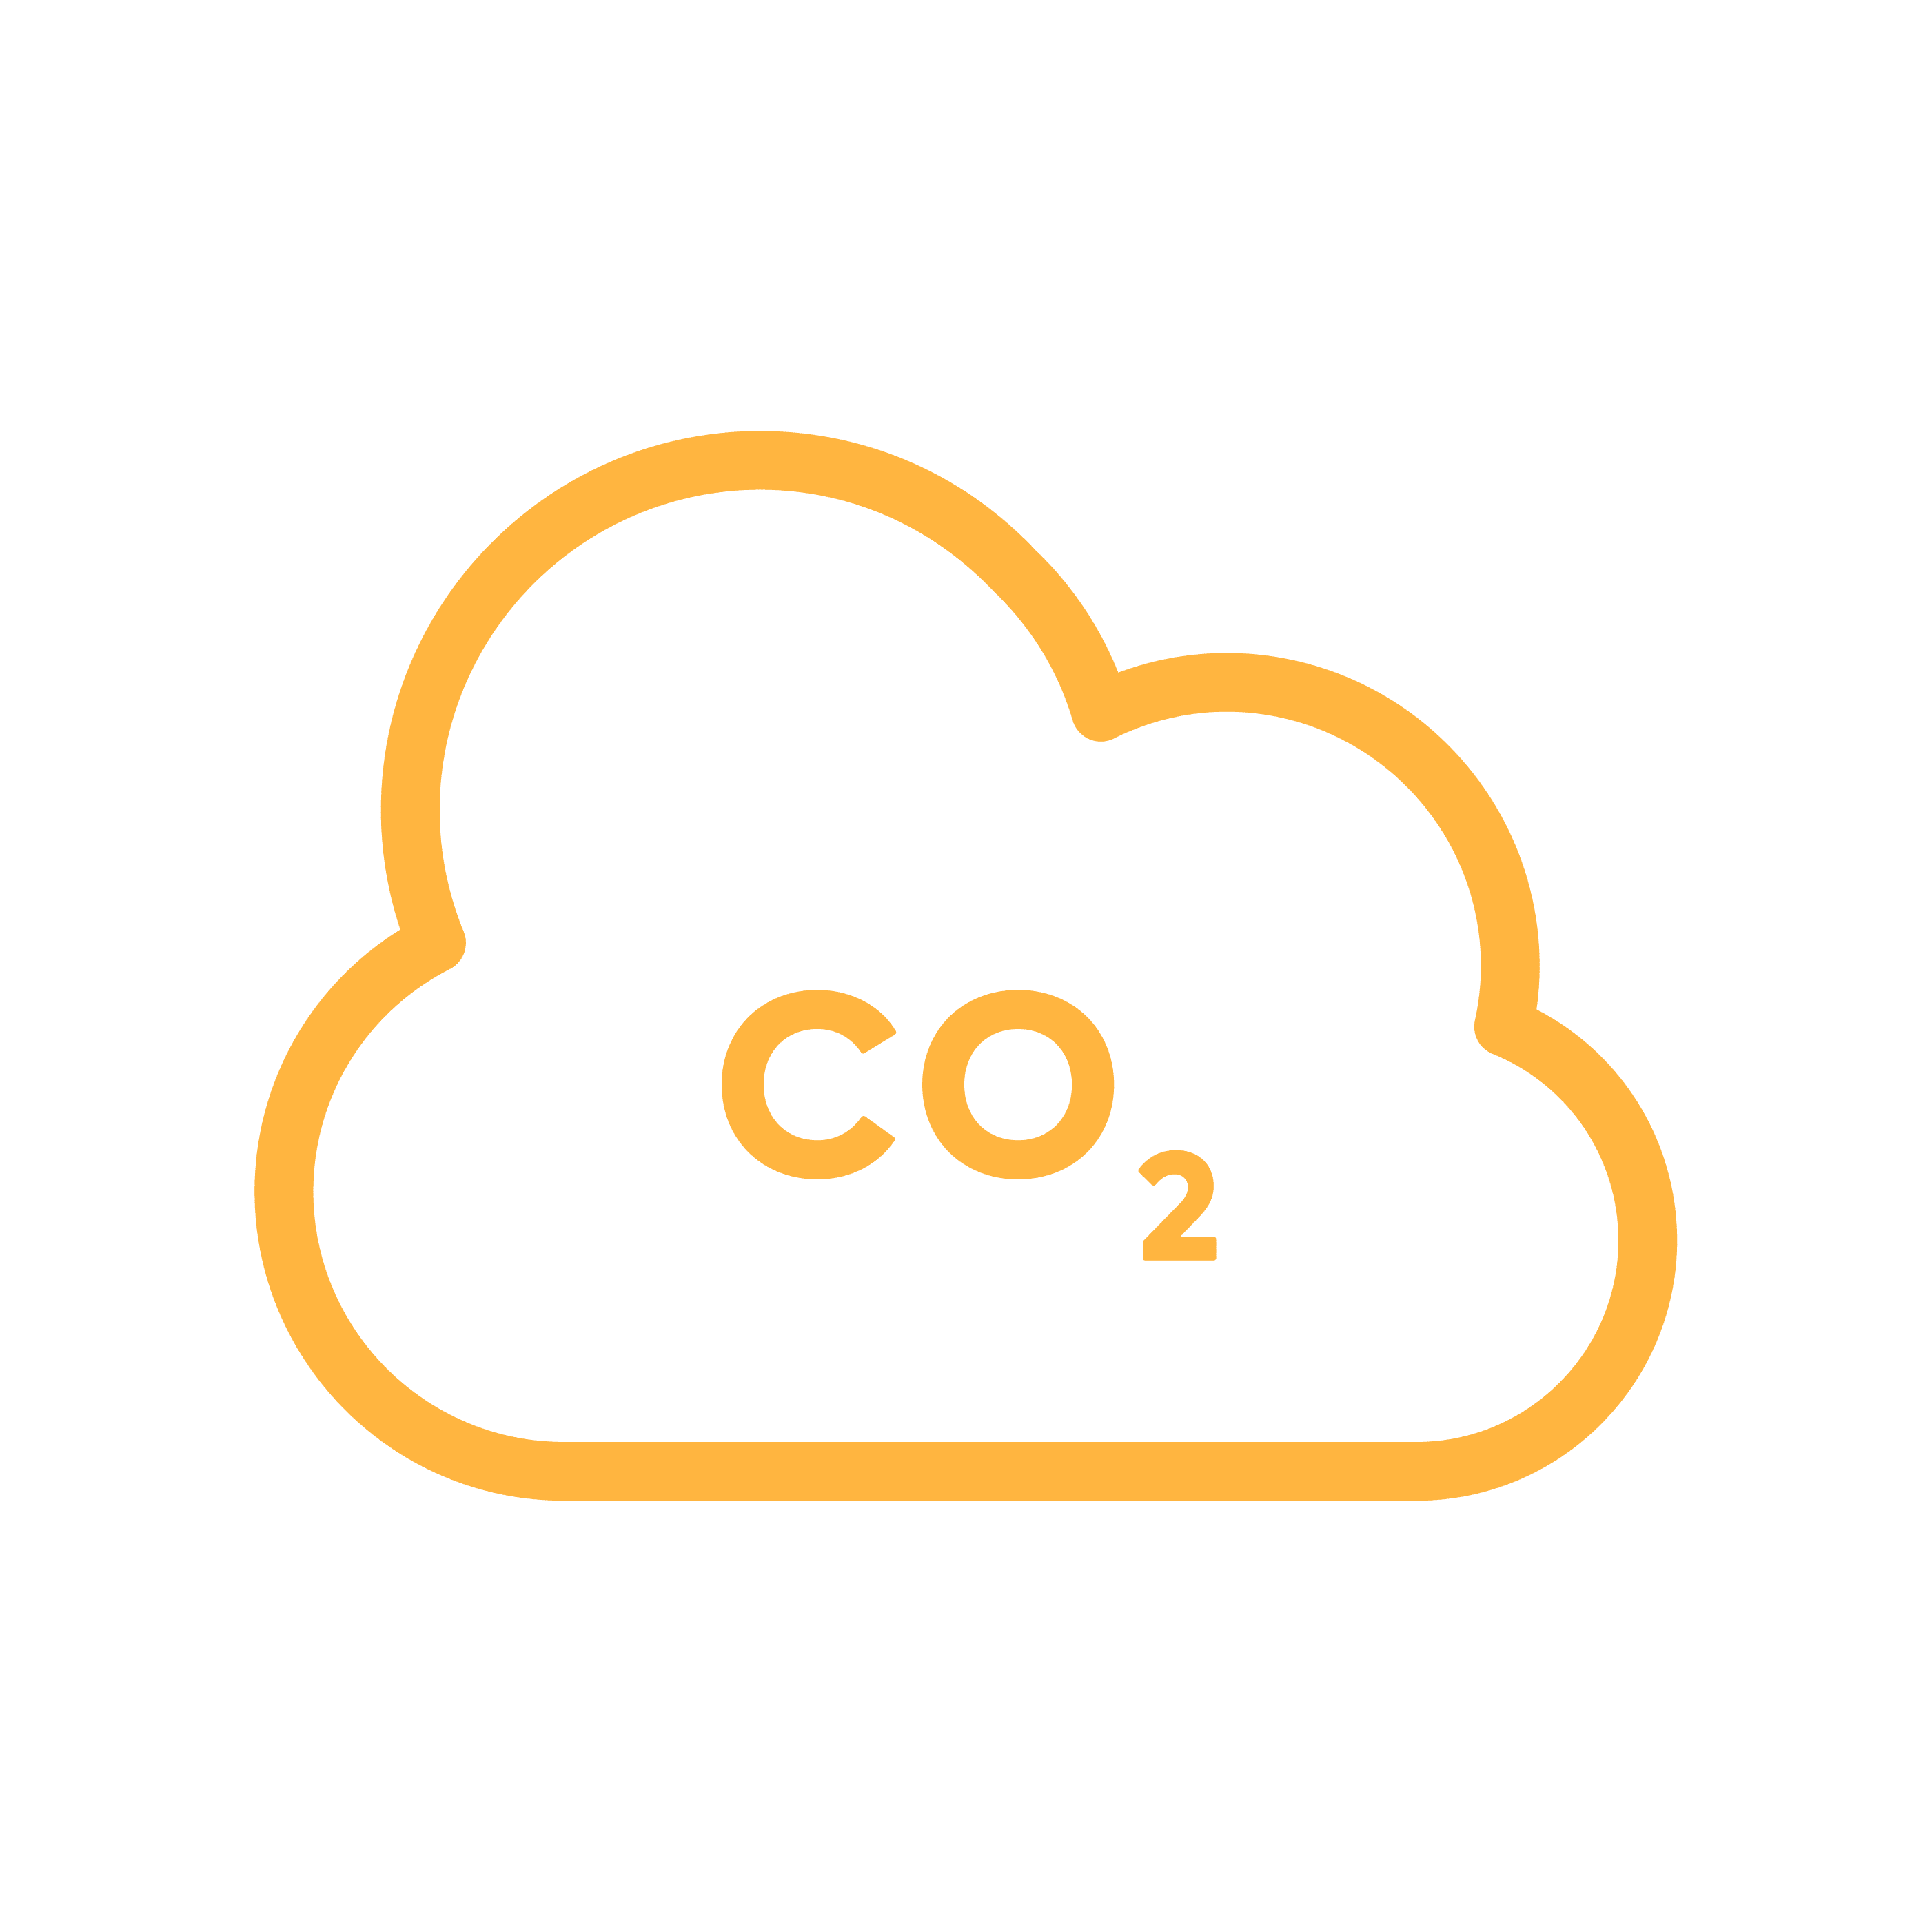 CO2 Carbon emissions